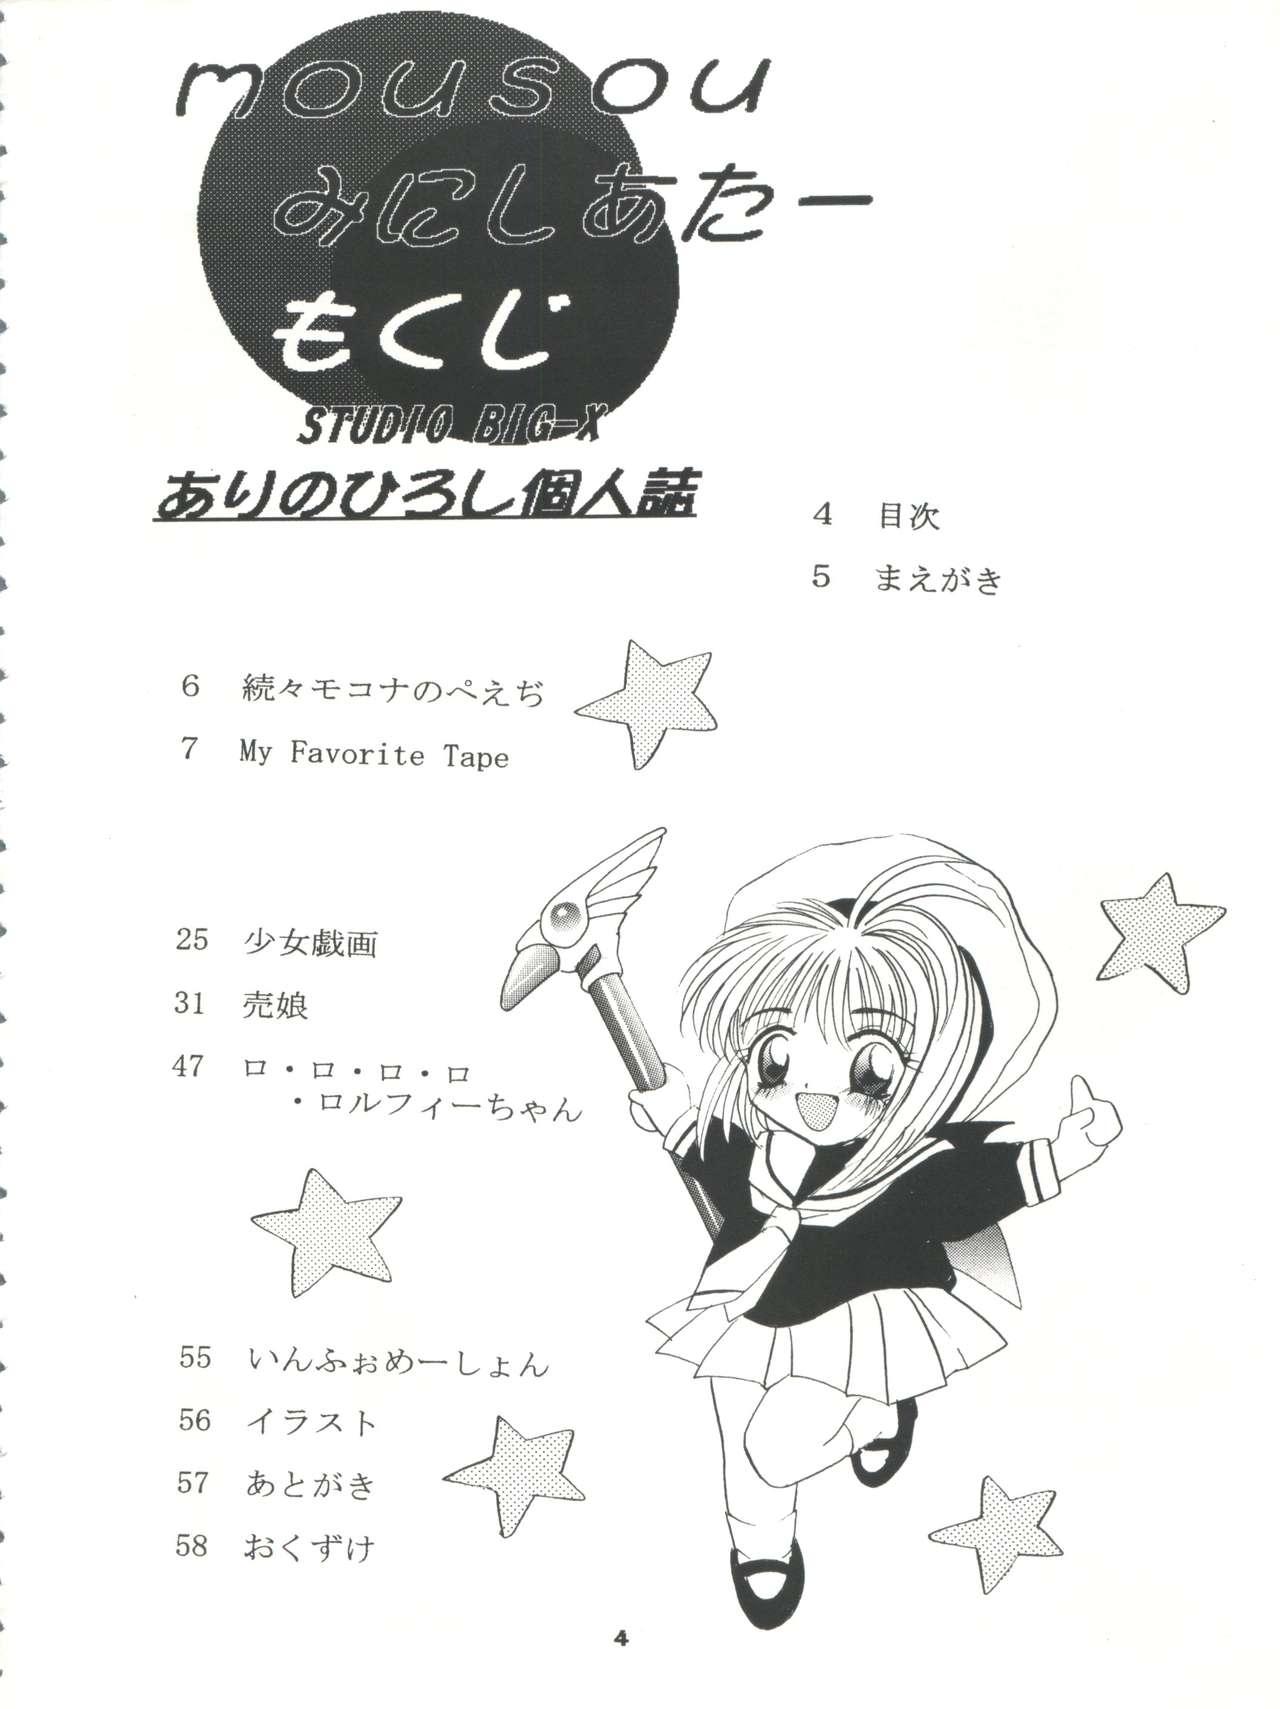 Style Mousou Mini Theater - Cardcaptor sakura Sakura taisen 4some - Page 4